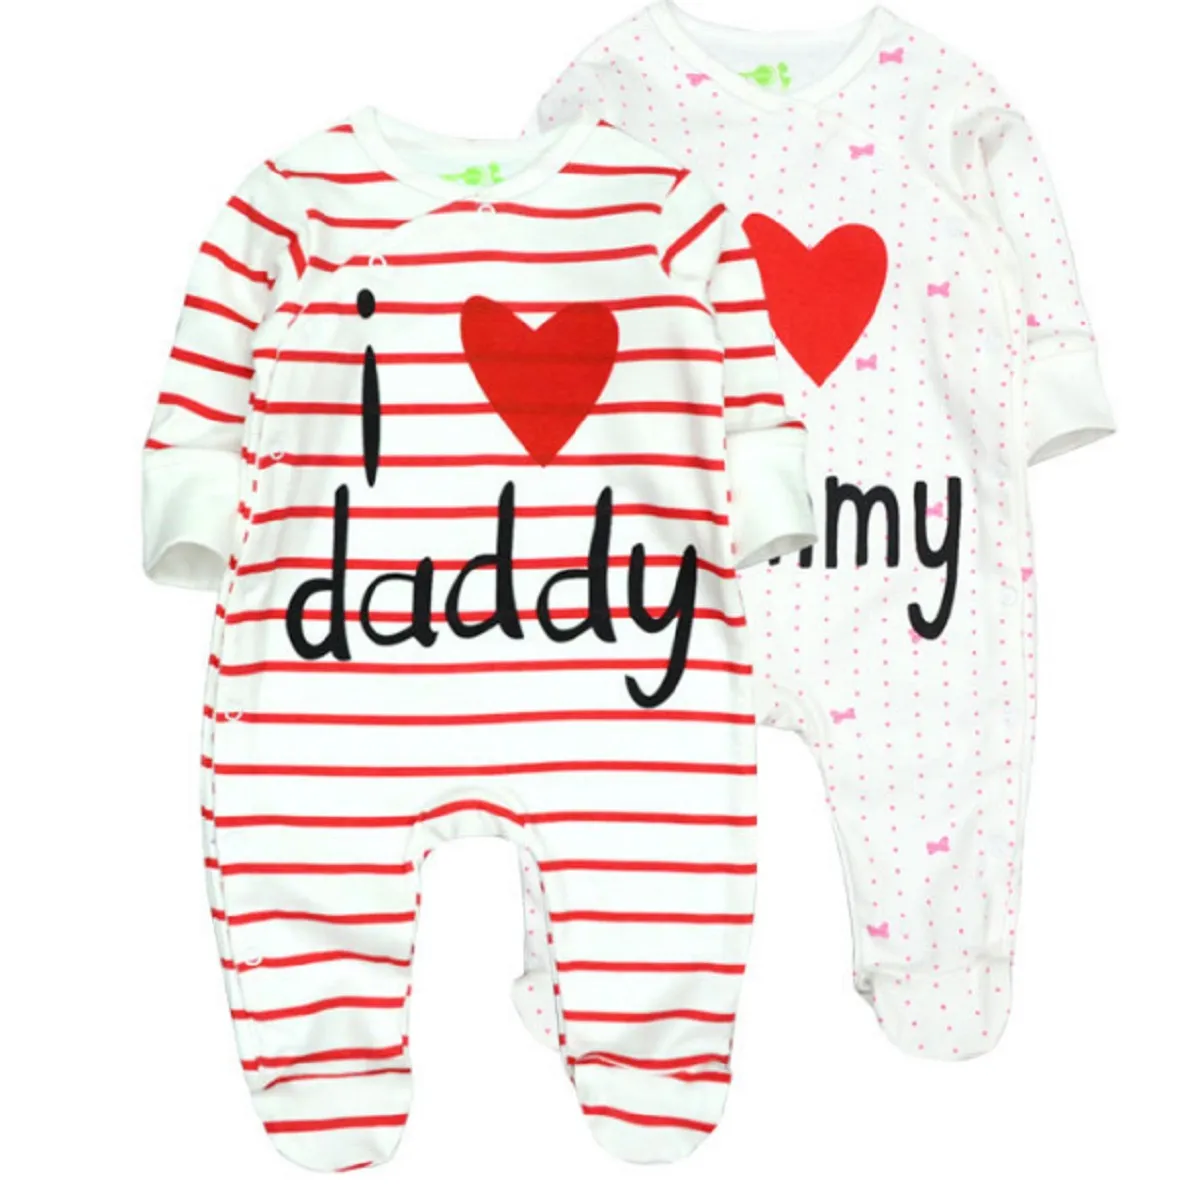 Детская одежда Я люблю DaddyMummy 100% чистый хлопок Детские ползунки унисекс - новорожденный органический хлопок (0-12 месяцев)